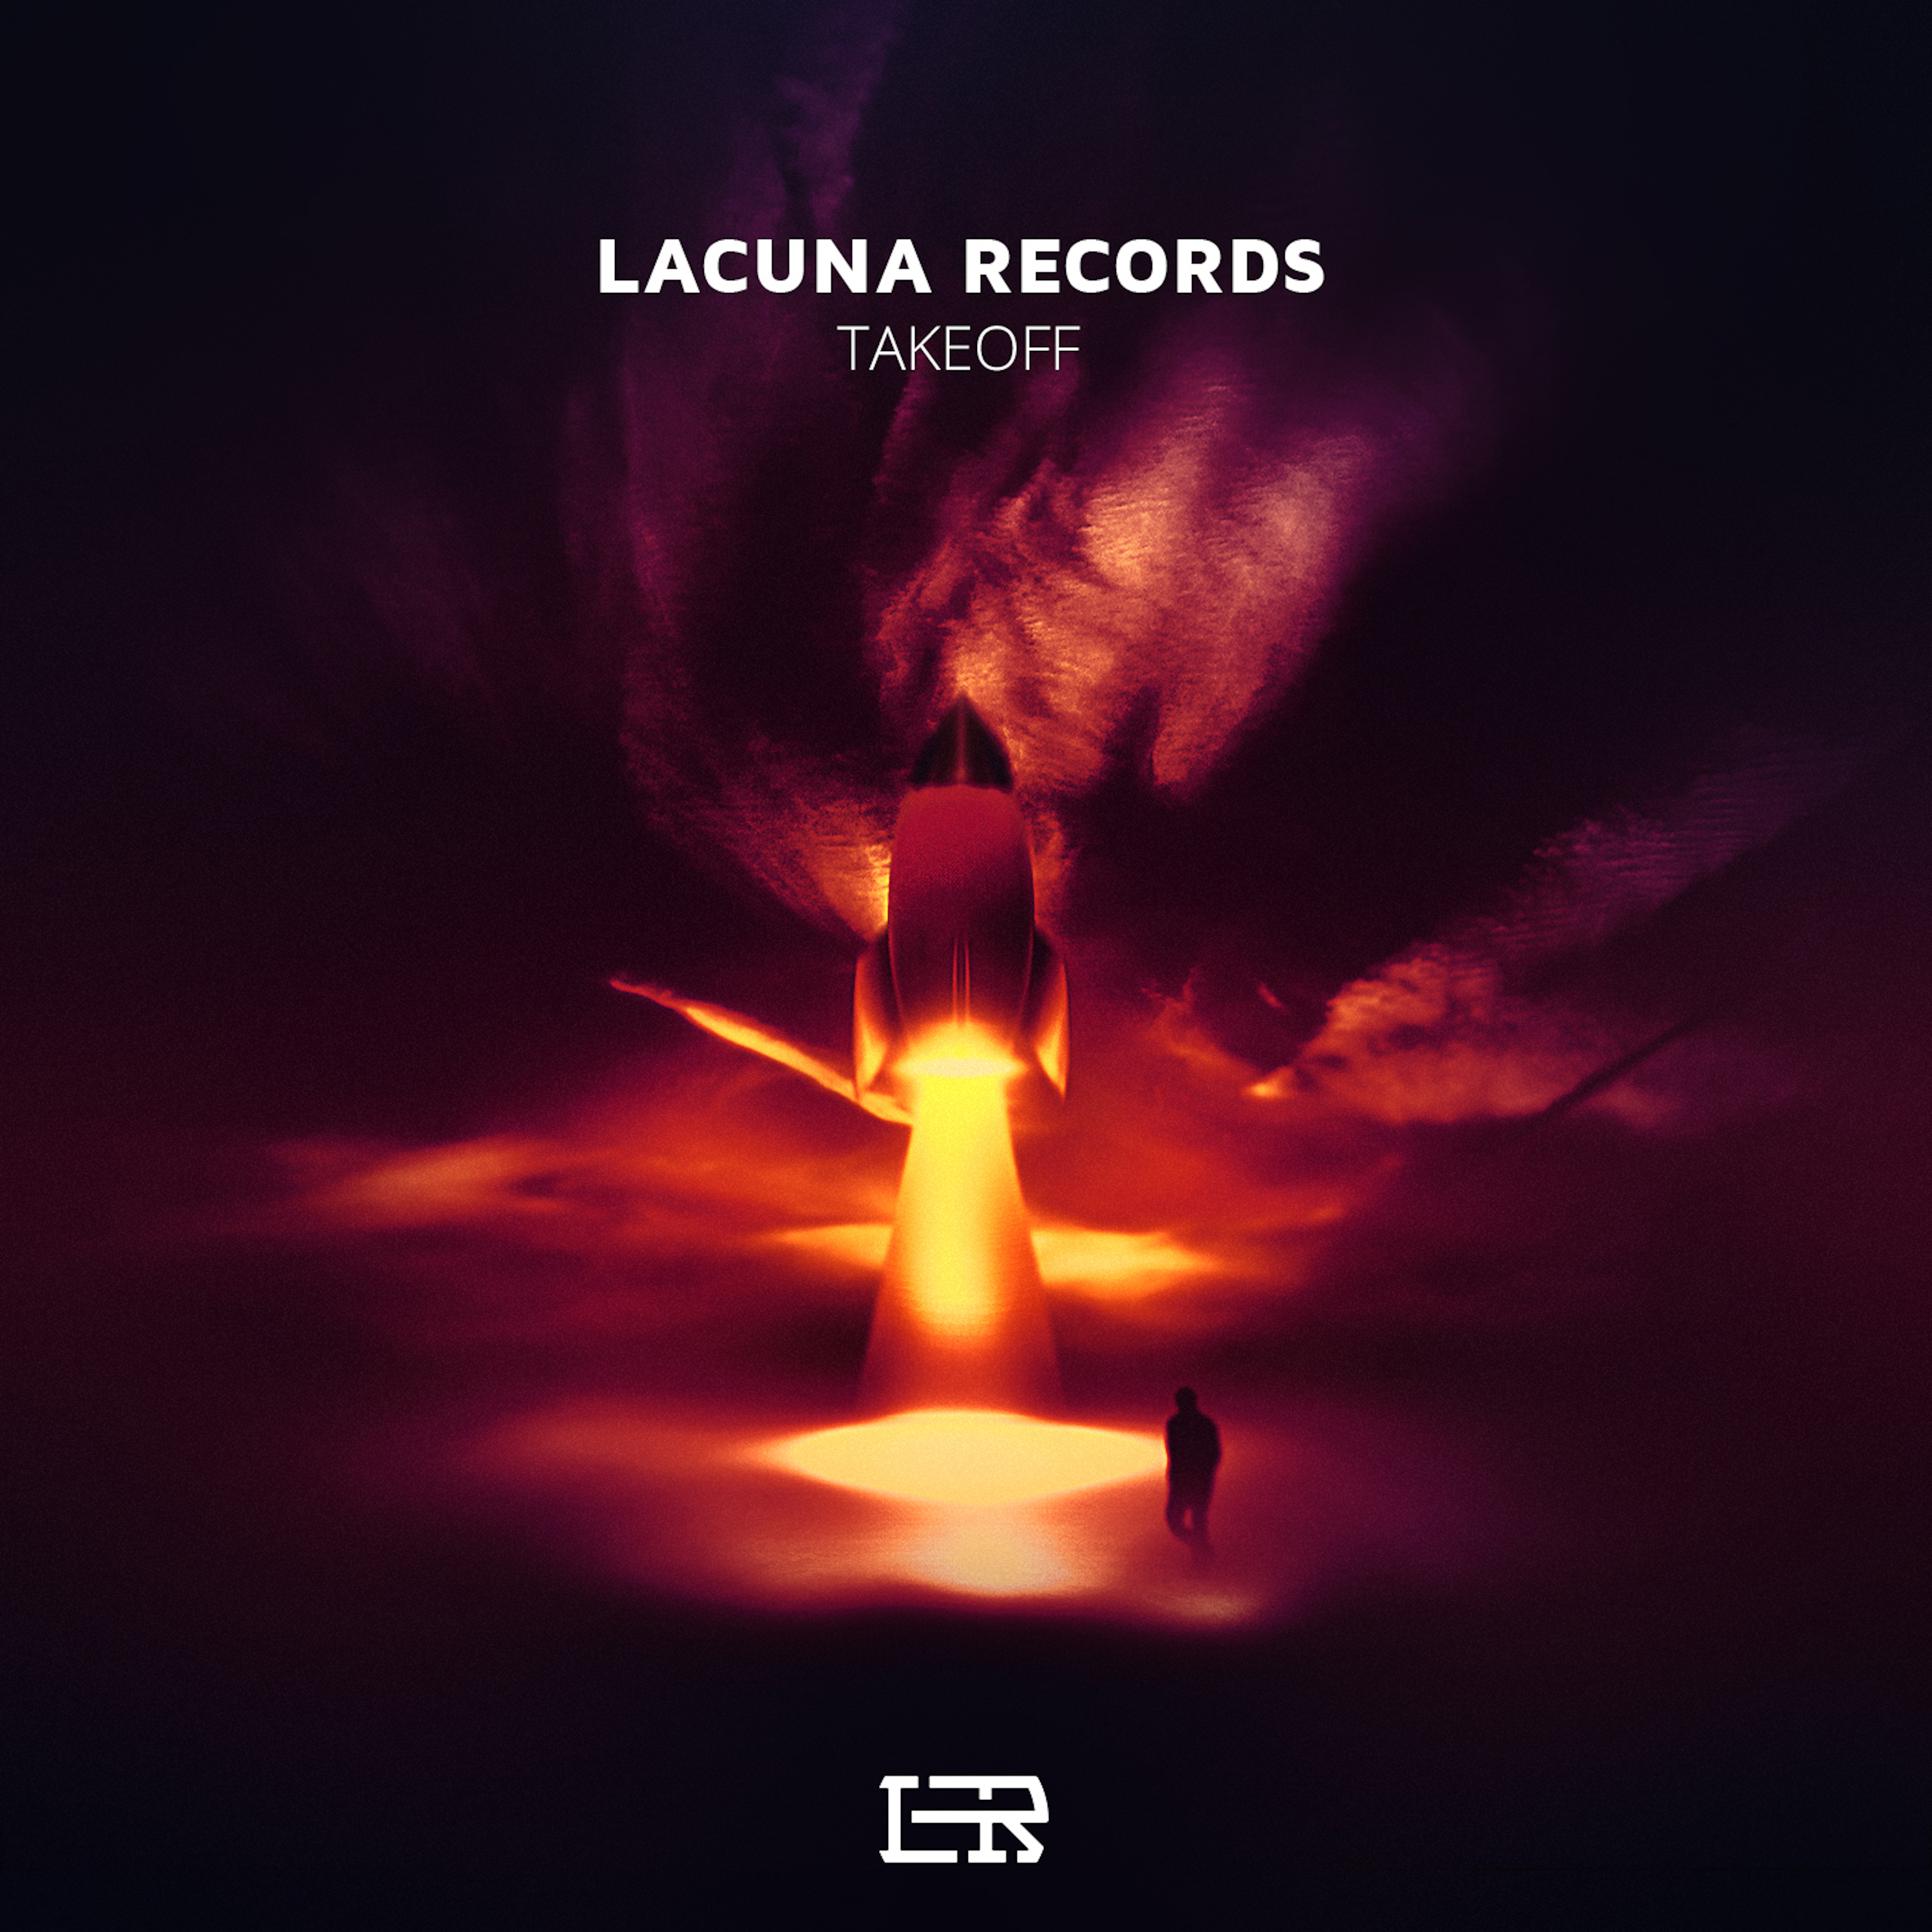 Lacuna 001 - Takeoff